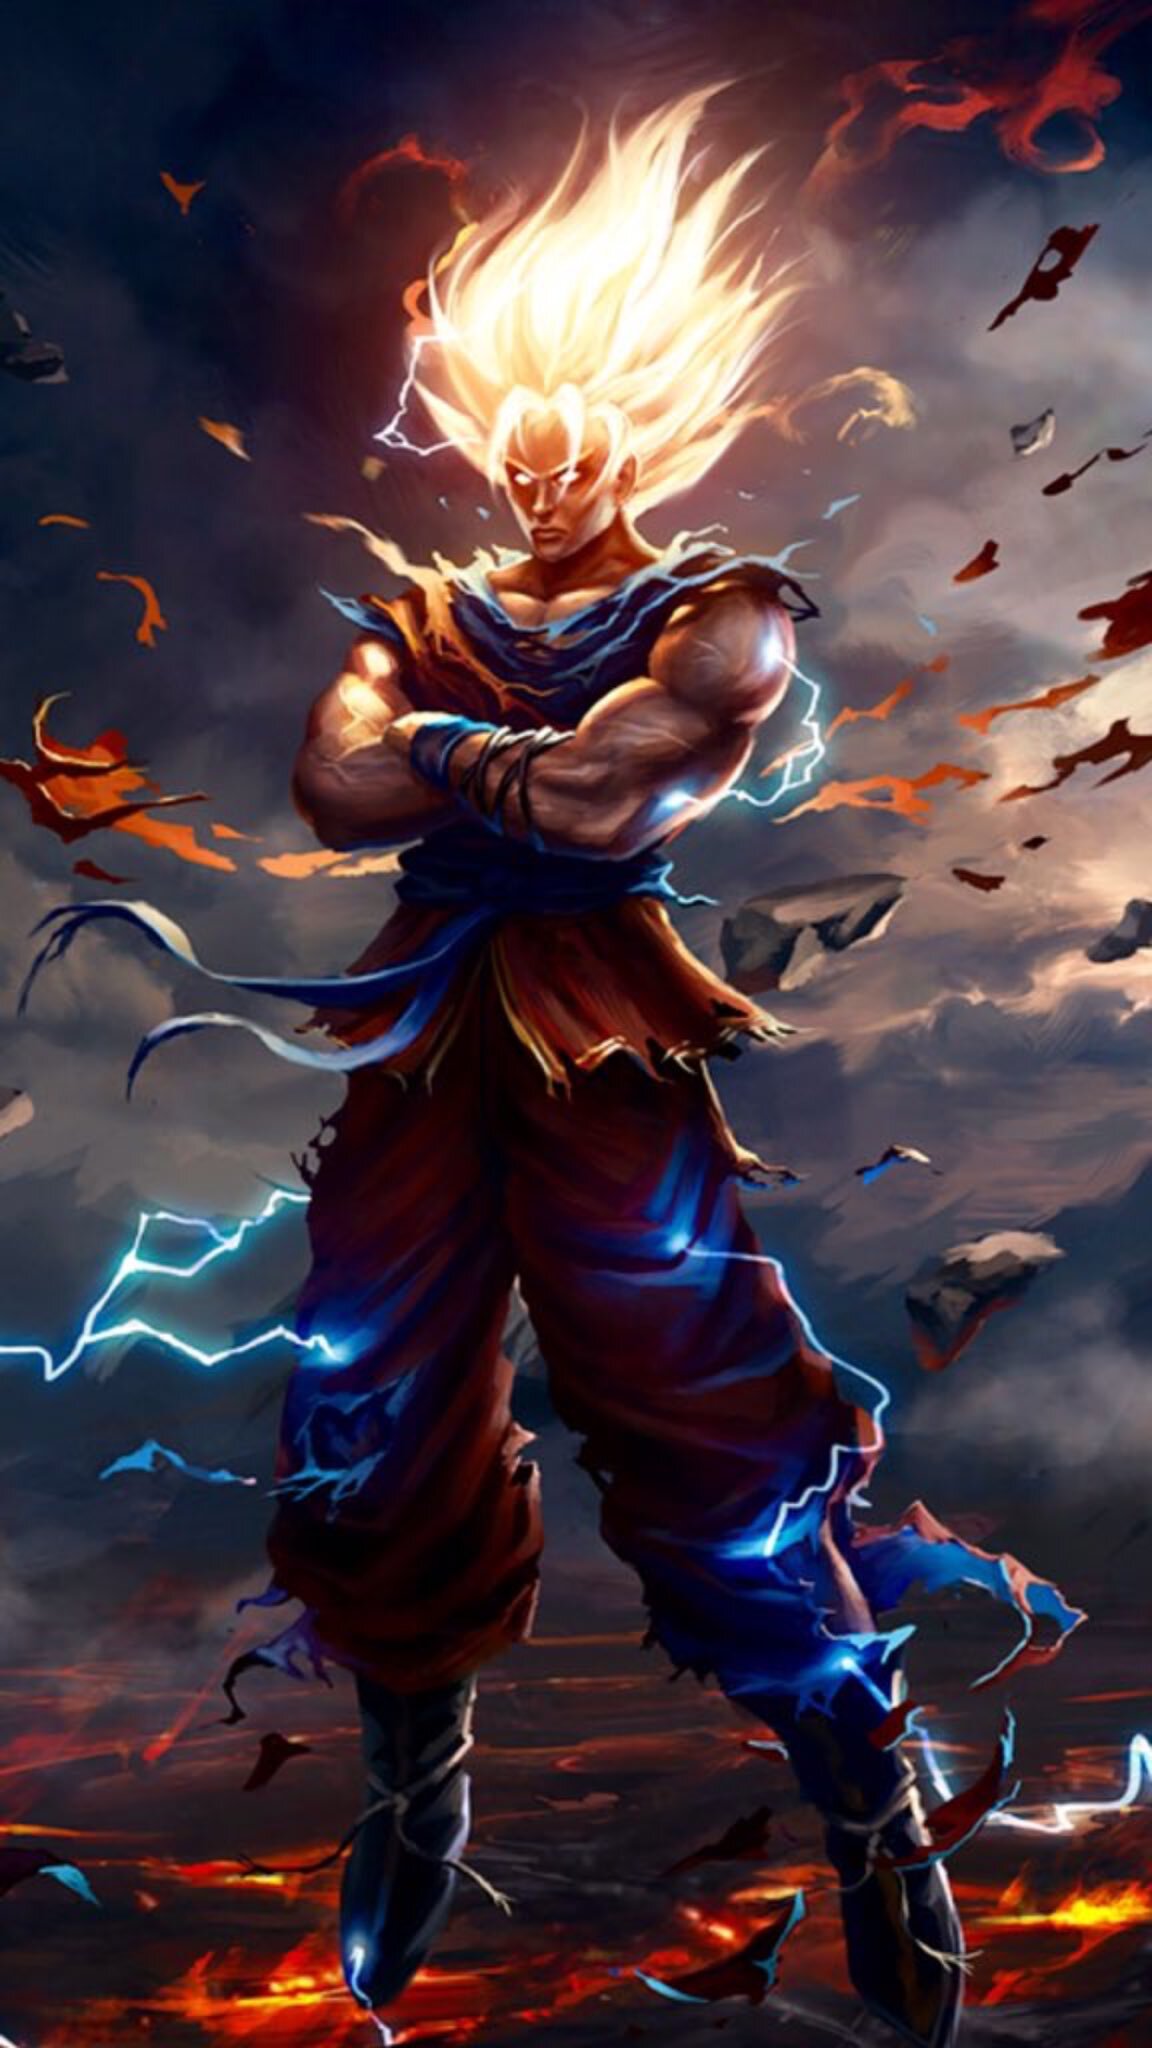 Qua các tập phim Dragon Ball Super, Goku đã tự phát huy được bản năng vô cực đầy ấn tượng. Tải ảnh về với sức mạnh không tưởng này để nhìn thấy Goku làm chủ hoàn toàn trận chiến trước các đối thủ khó chịu.